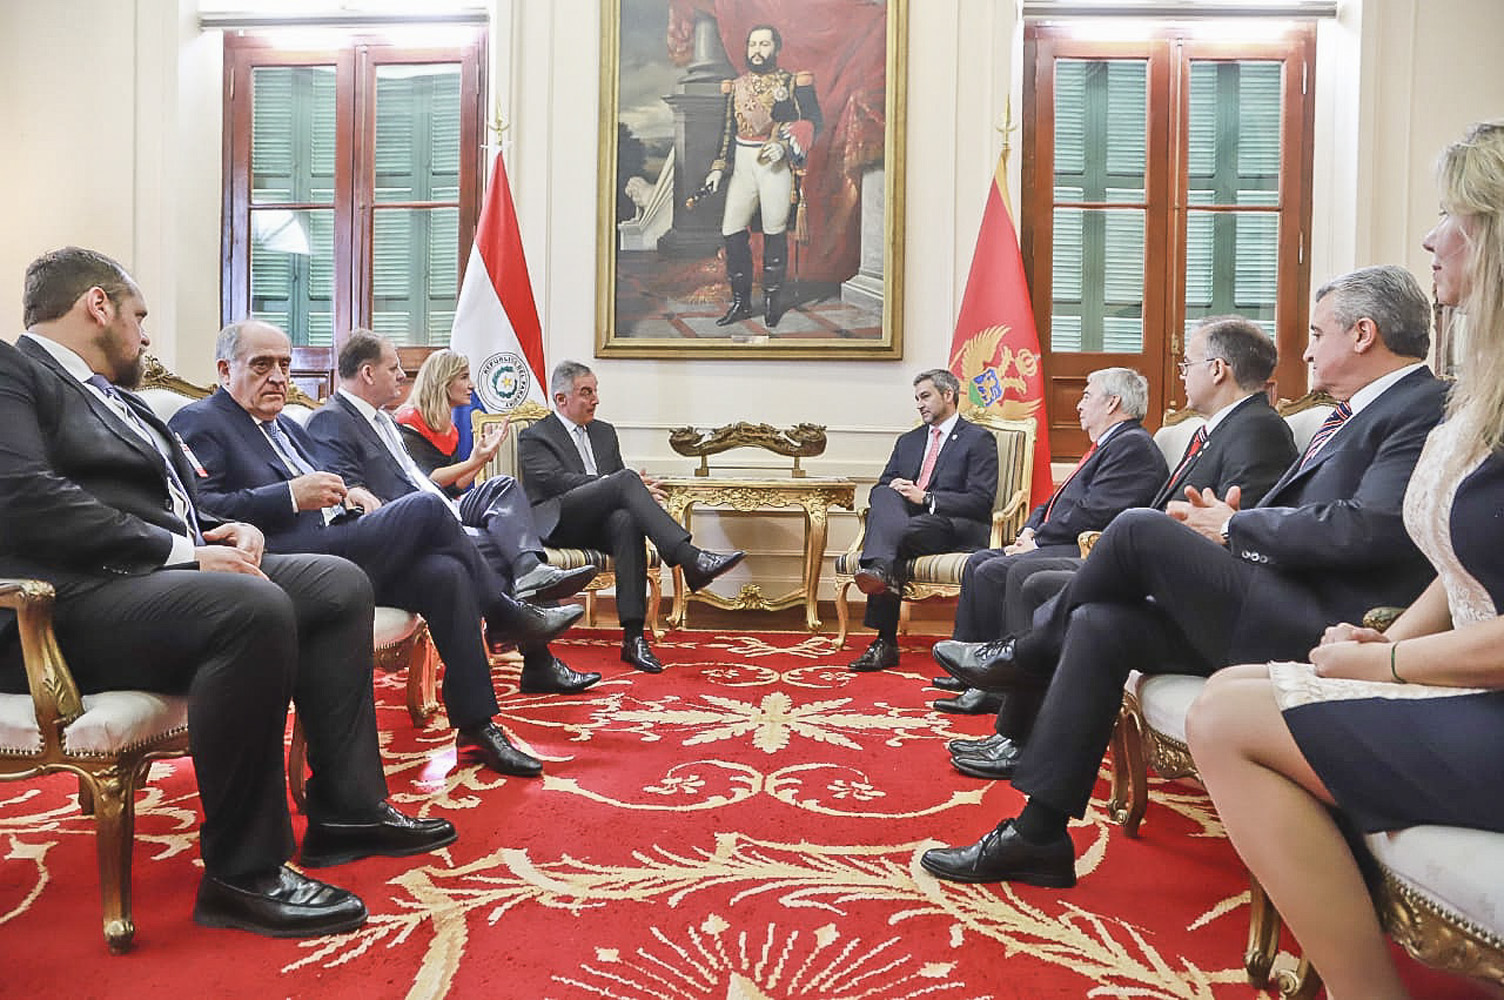 La Visita Oficial del Presidente de Montenegro consolida el vínculo de amistad con el Paraguay